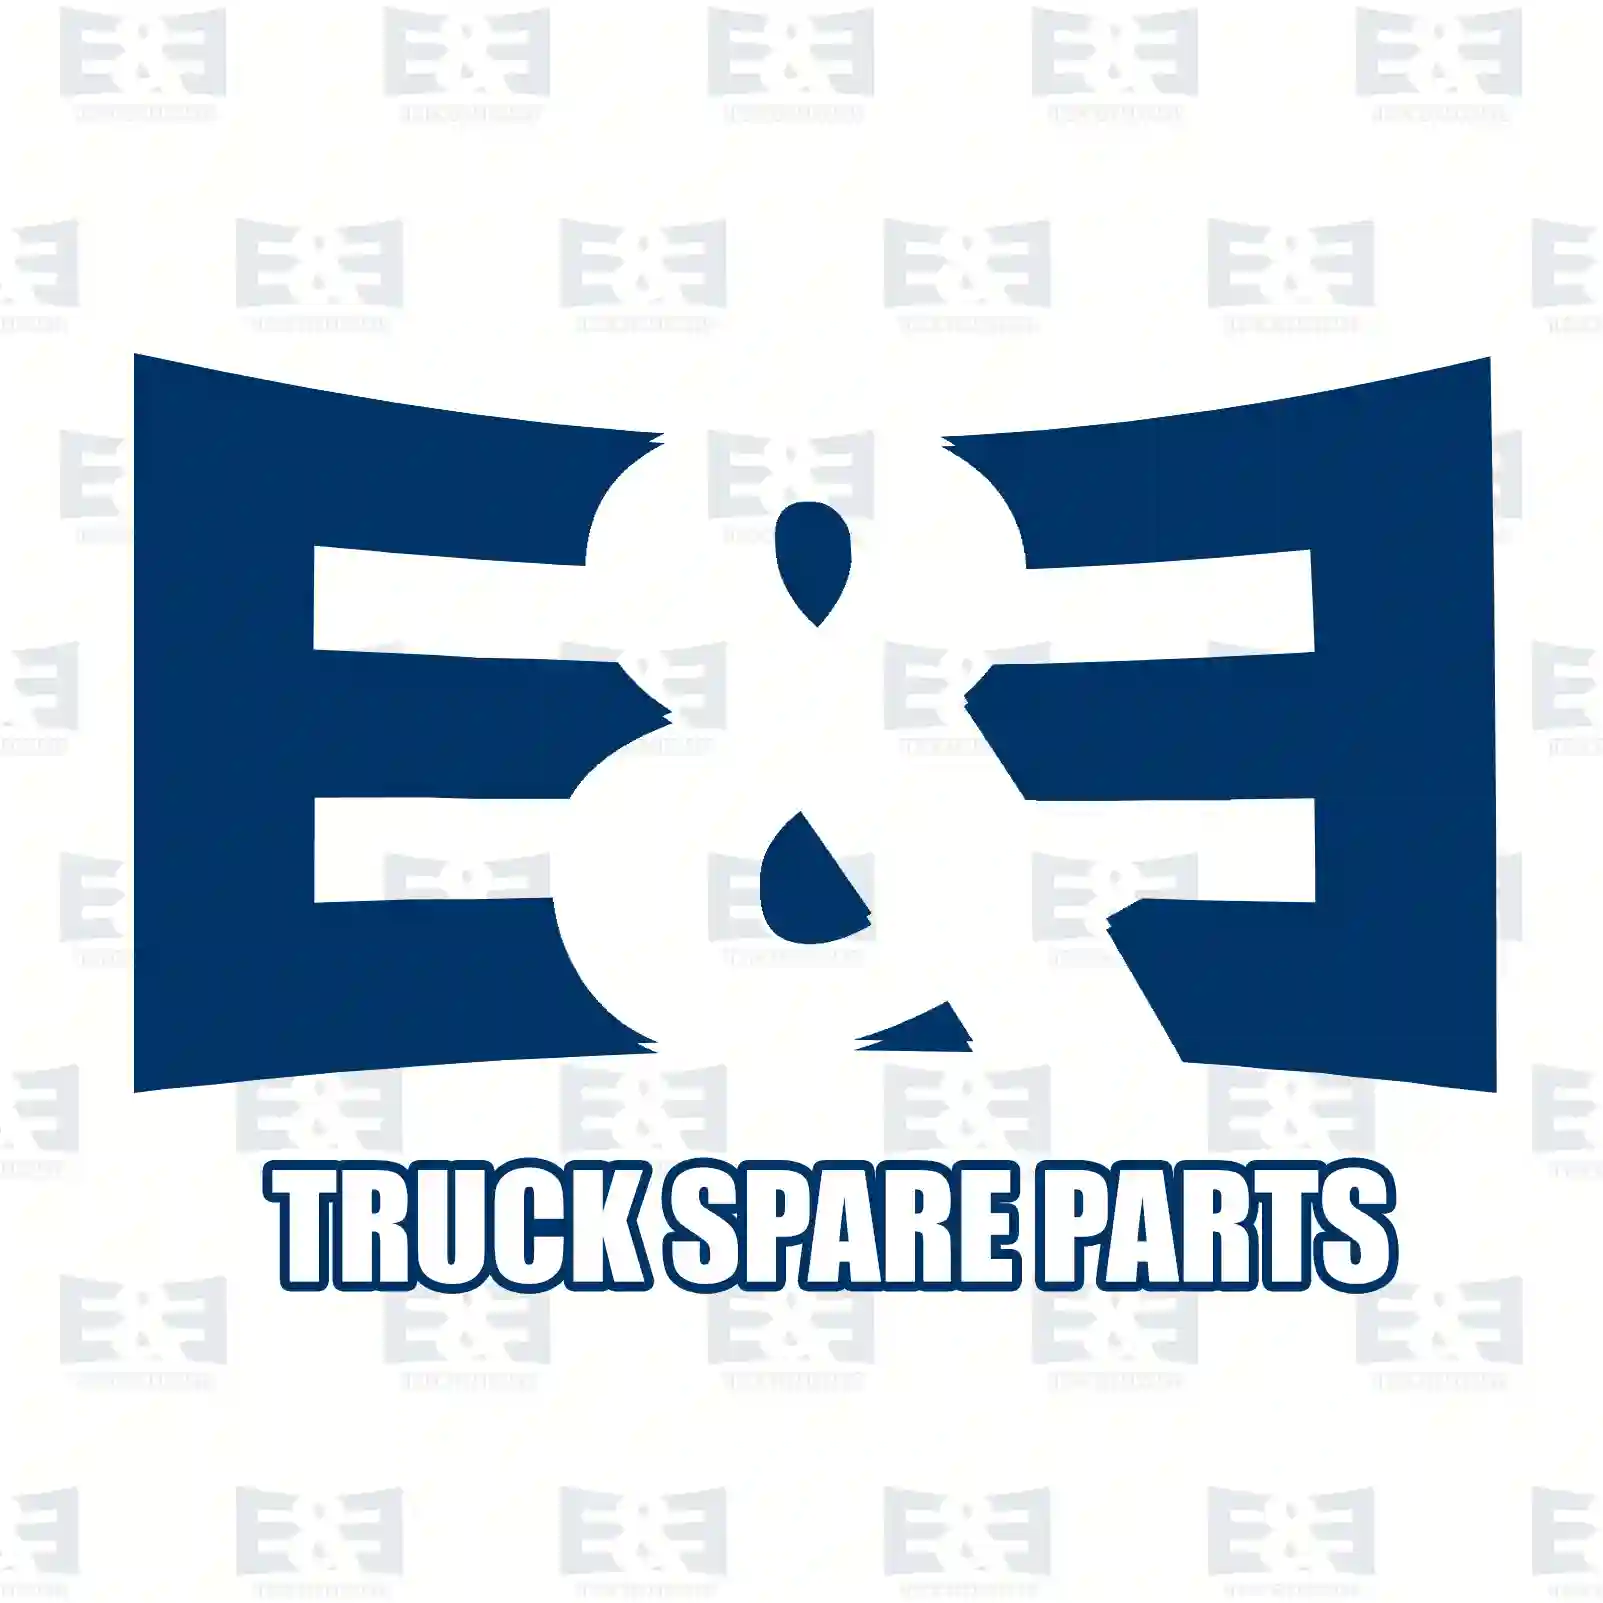 Piston, complete with rings, 2E2200326, 6020300517, 6020300617, 6020300717, 602030071752, 6020300817, 602030081752, 602030081754, 602030081756, 6020300917, 6020301017 ||  2E2200326 E&E Truck Spare Parts | Truck Spare Parts, Auotomotive Spare Parts Piston, complete with rings, 2E2200326, 6020300517, 6020300617, 6020300717, 602030071752, 6020300817, 602030081752, 602030081754, 602030081756, 6020300917, 6020301017 ||  2E2200326 E&E Truck Spare Parts | Truck Spare Parts, Auotomotive Spare Parts